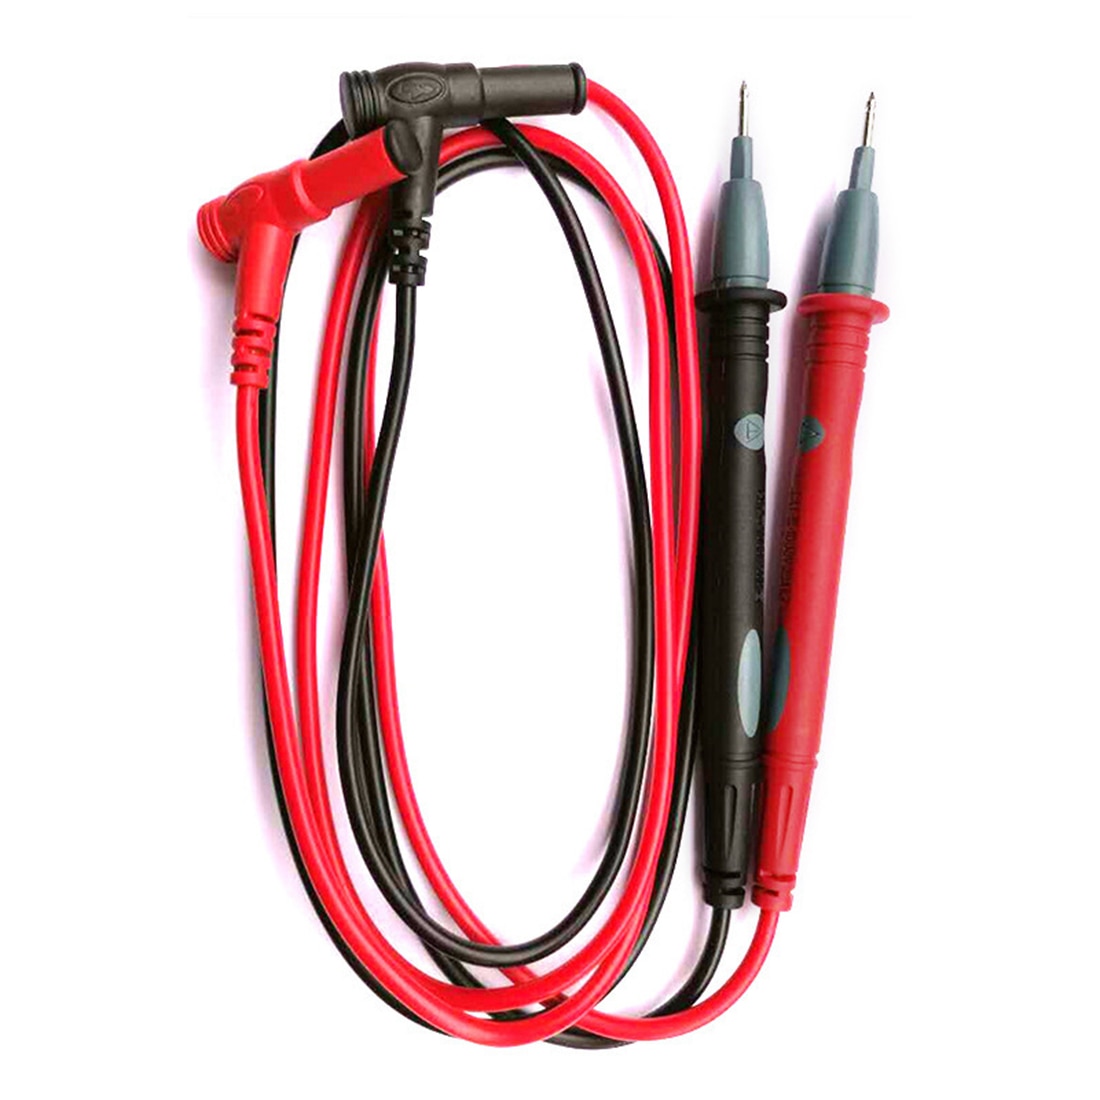 1 Paar 10A Amperemeter Test Cord Nuttig Universele Multimeter Multi Meter Voltmeter Lead Wire Probe Pen Kabel Witn 1 Paar klem